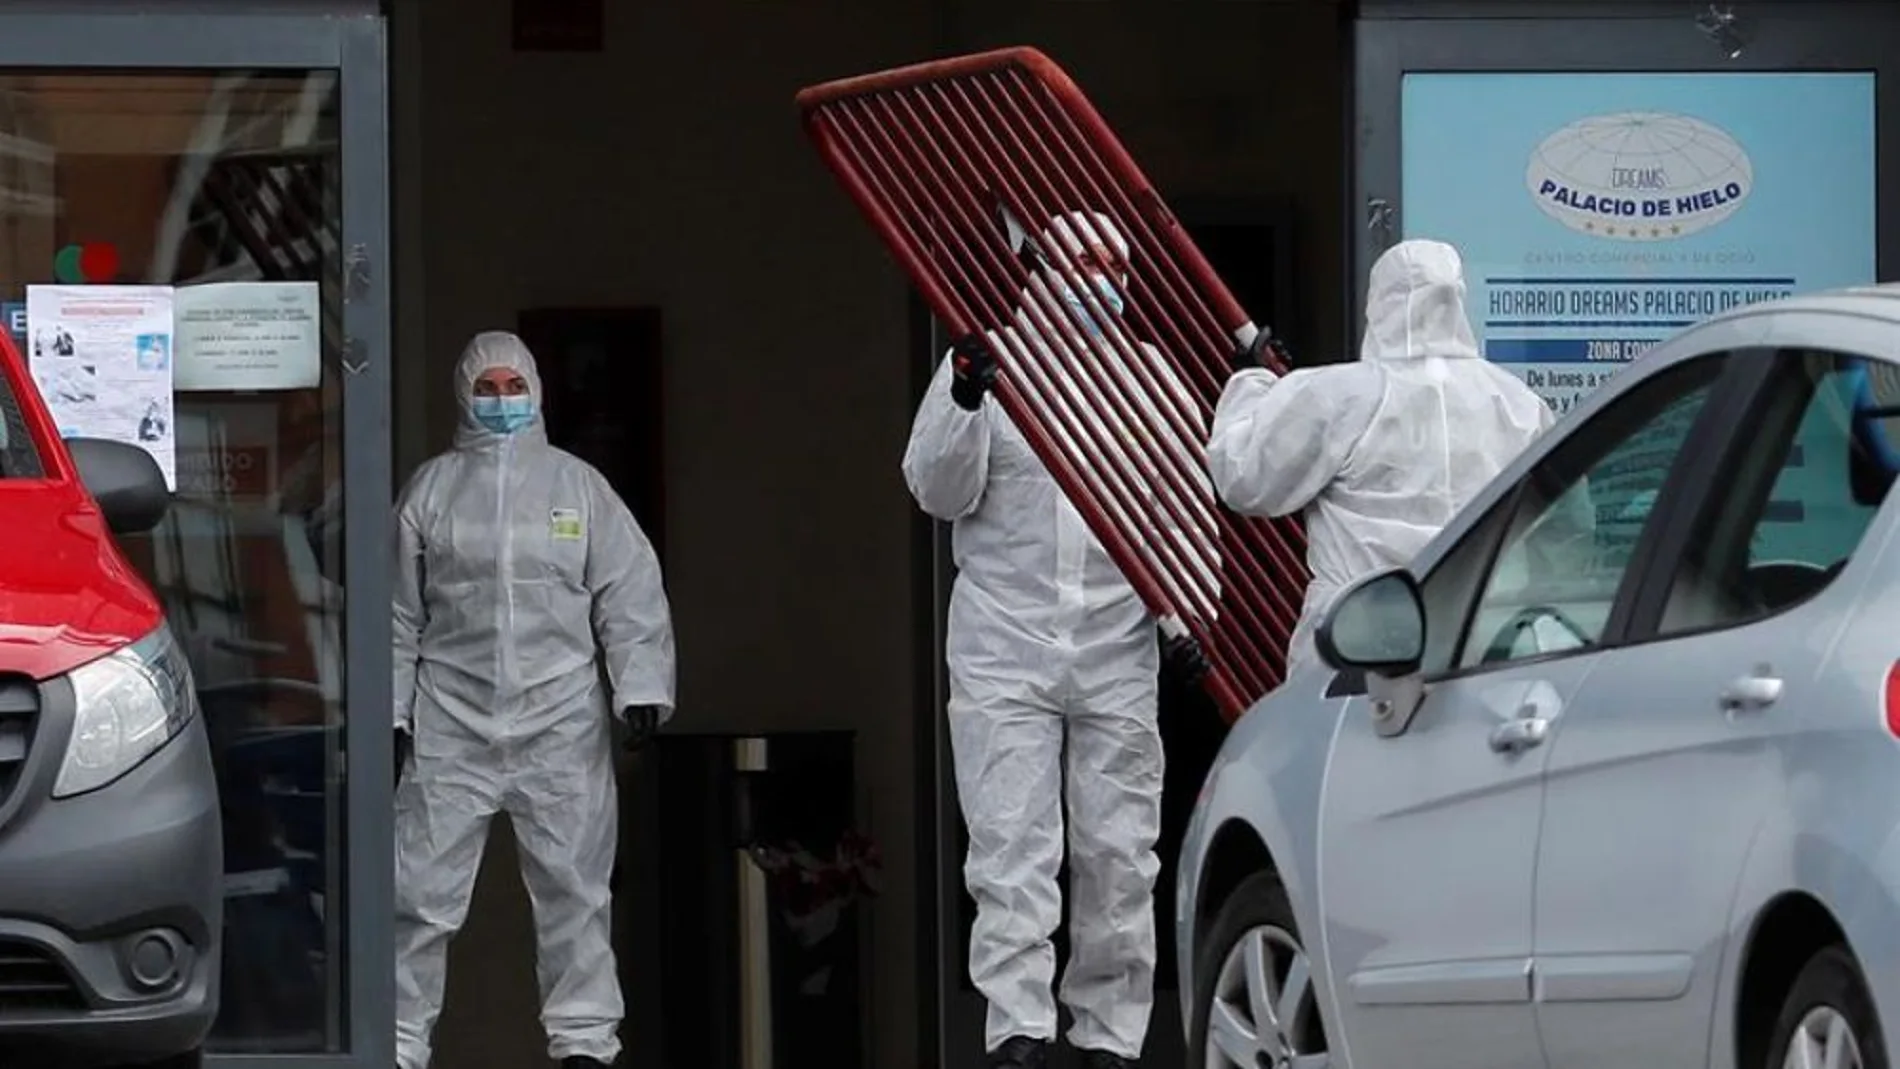 laSexta Noticias 14:00 (25-03-20) España supera a China en víctimas por coronavirus: 3.434 fallecidos y 47.610 contagios